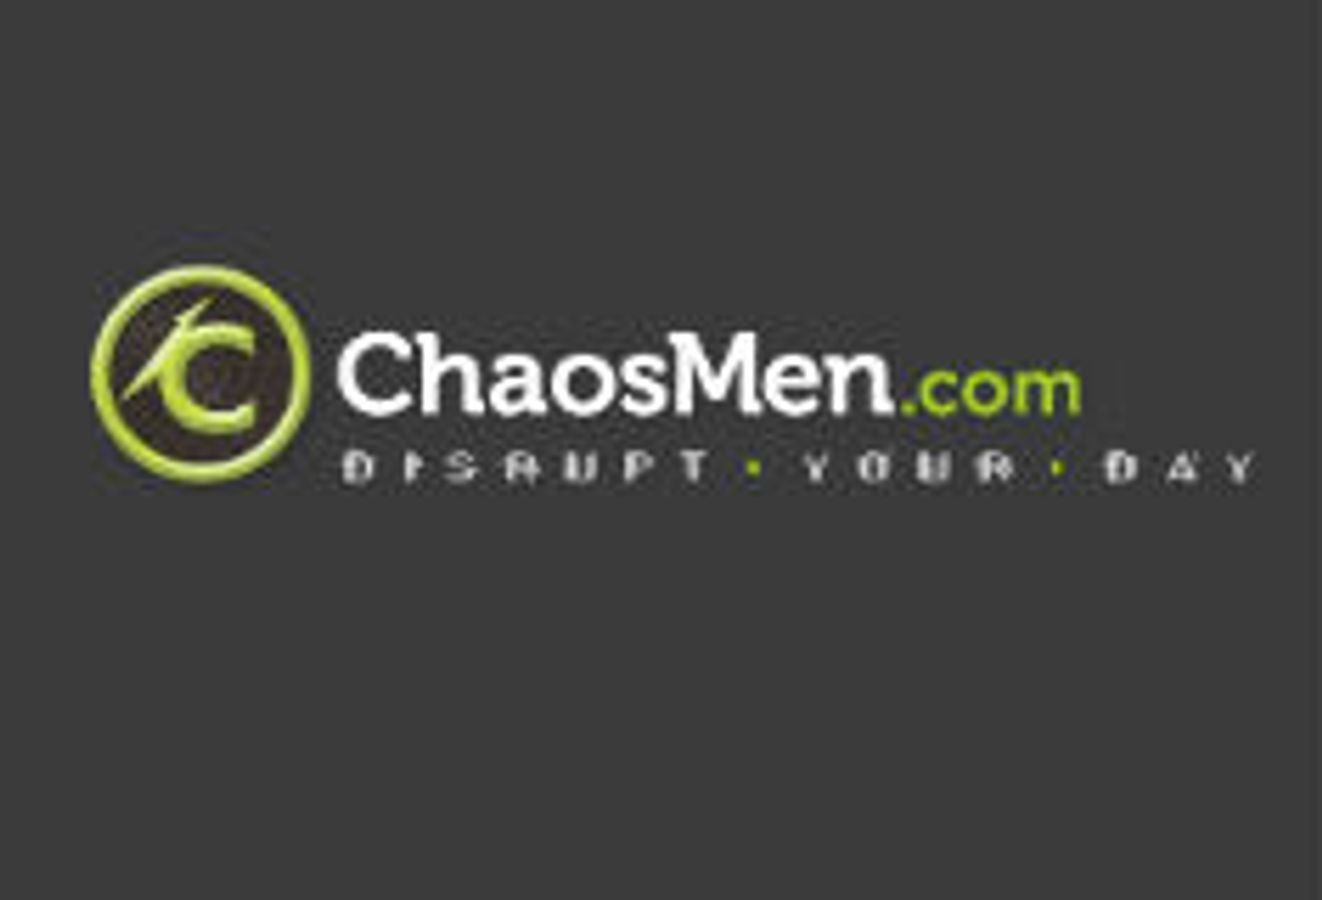 Chaosmen.com